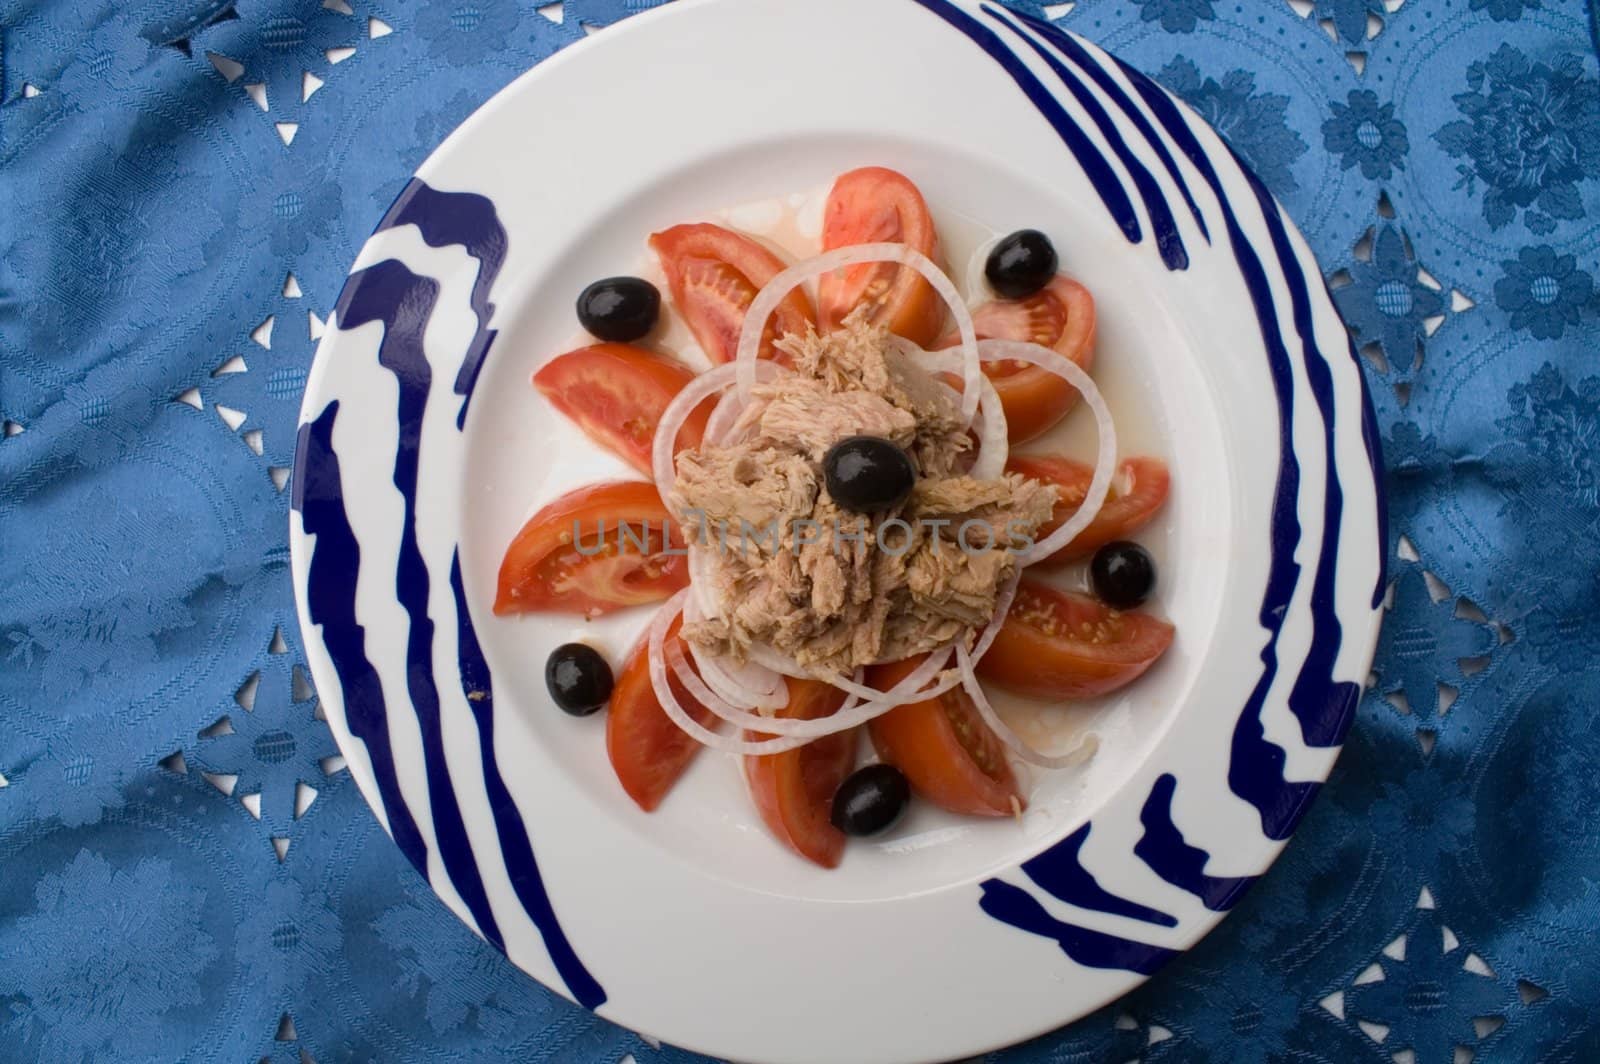 tomatoe salad with tuna fish